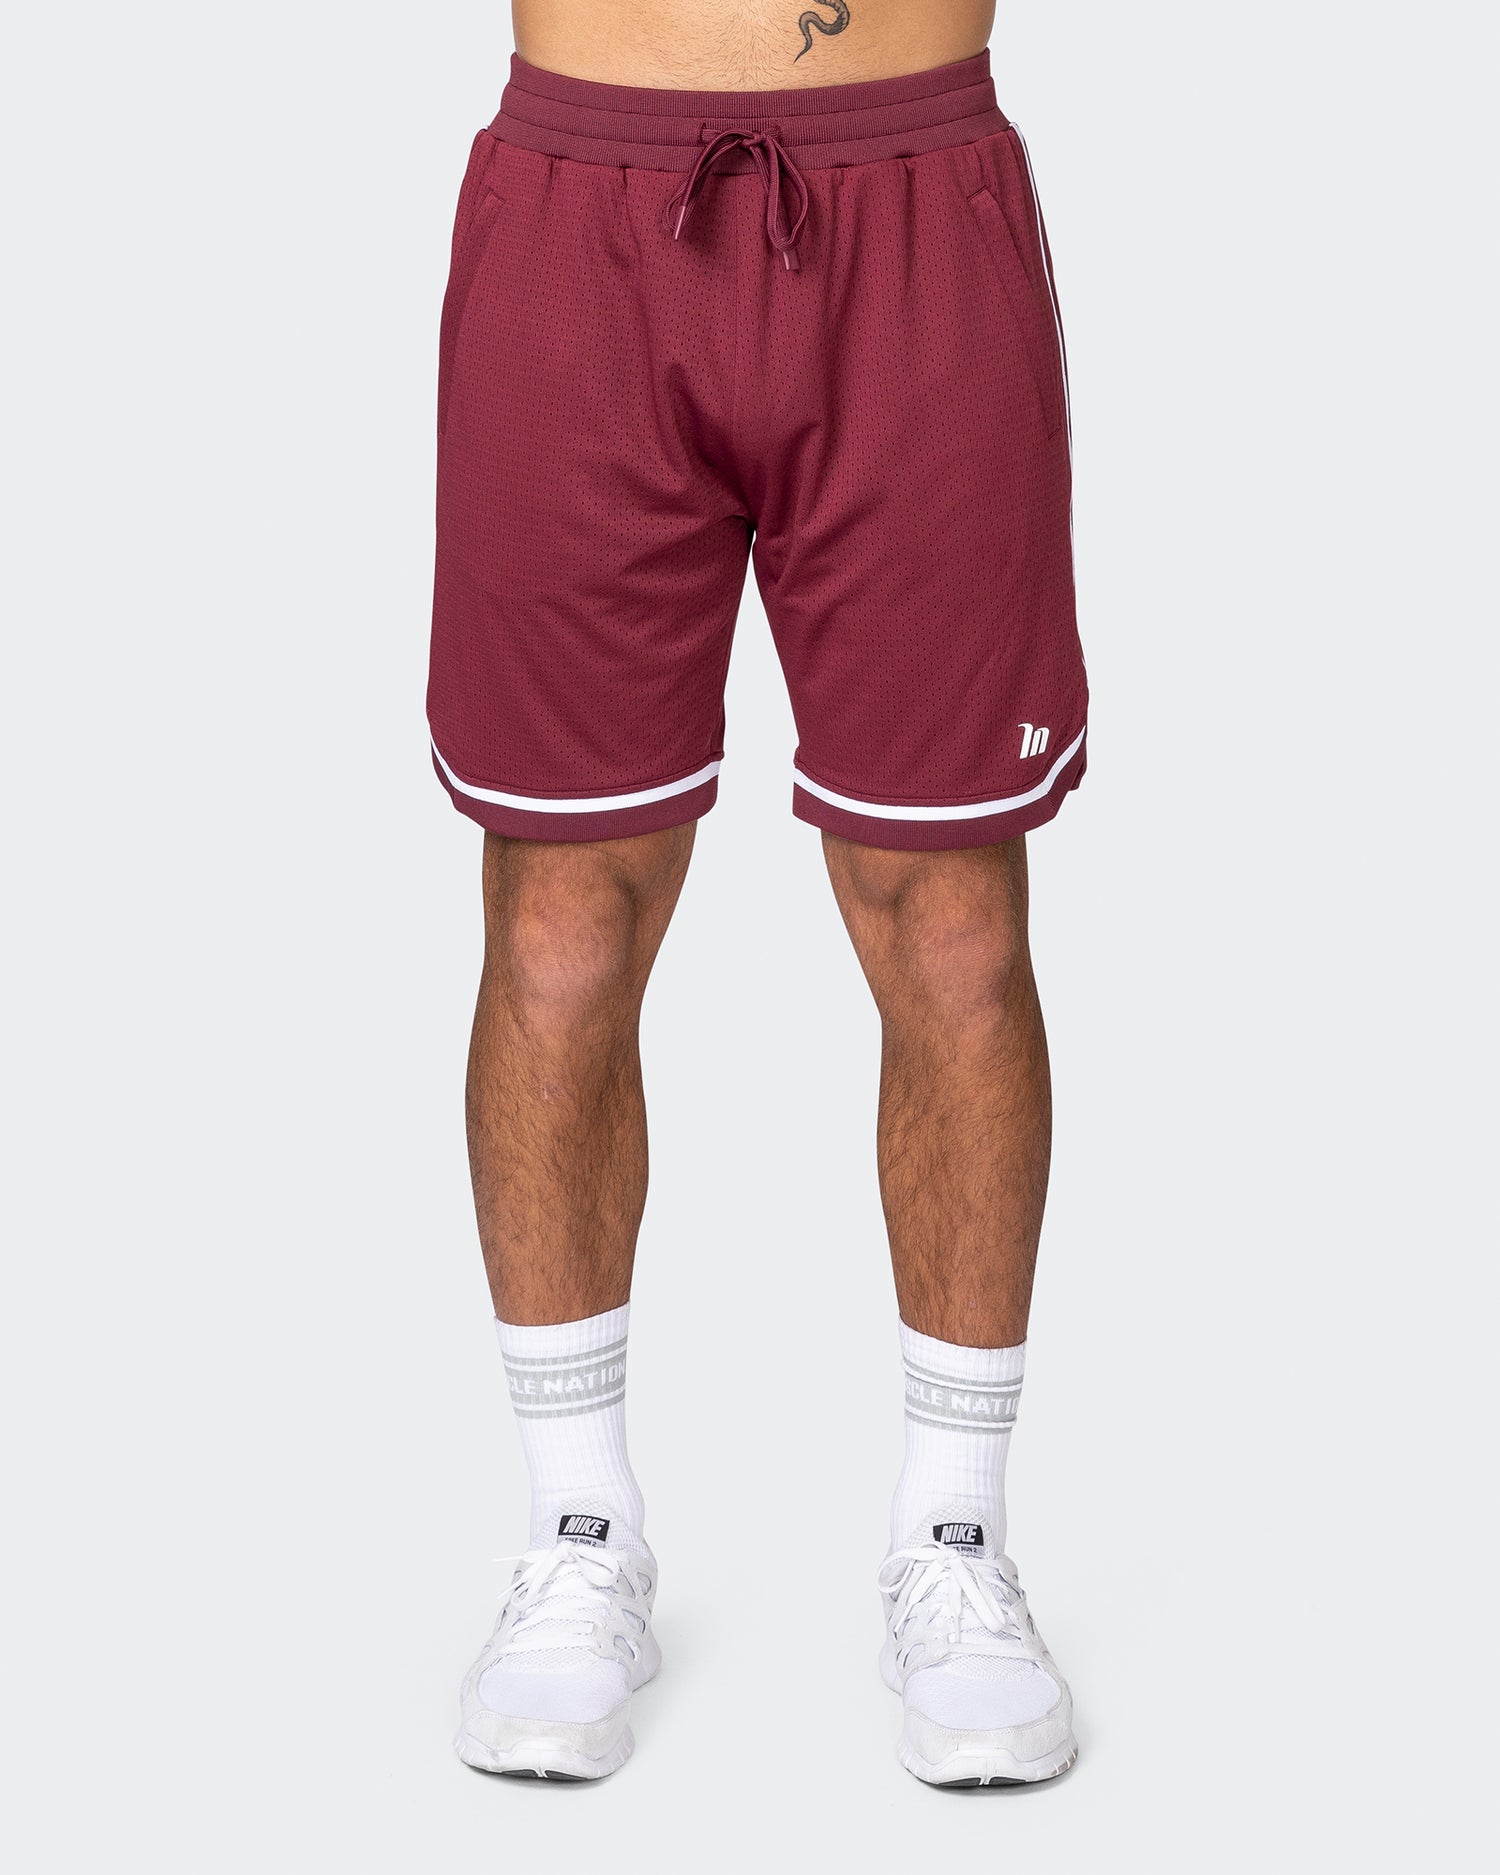 Mens 8" Basketball Shorts - Wine